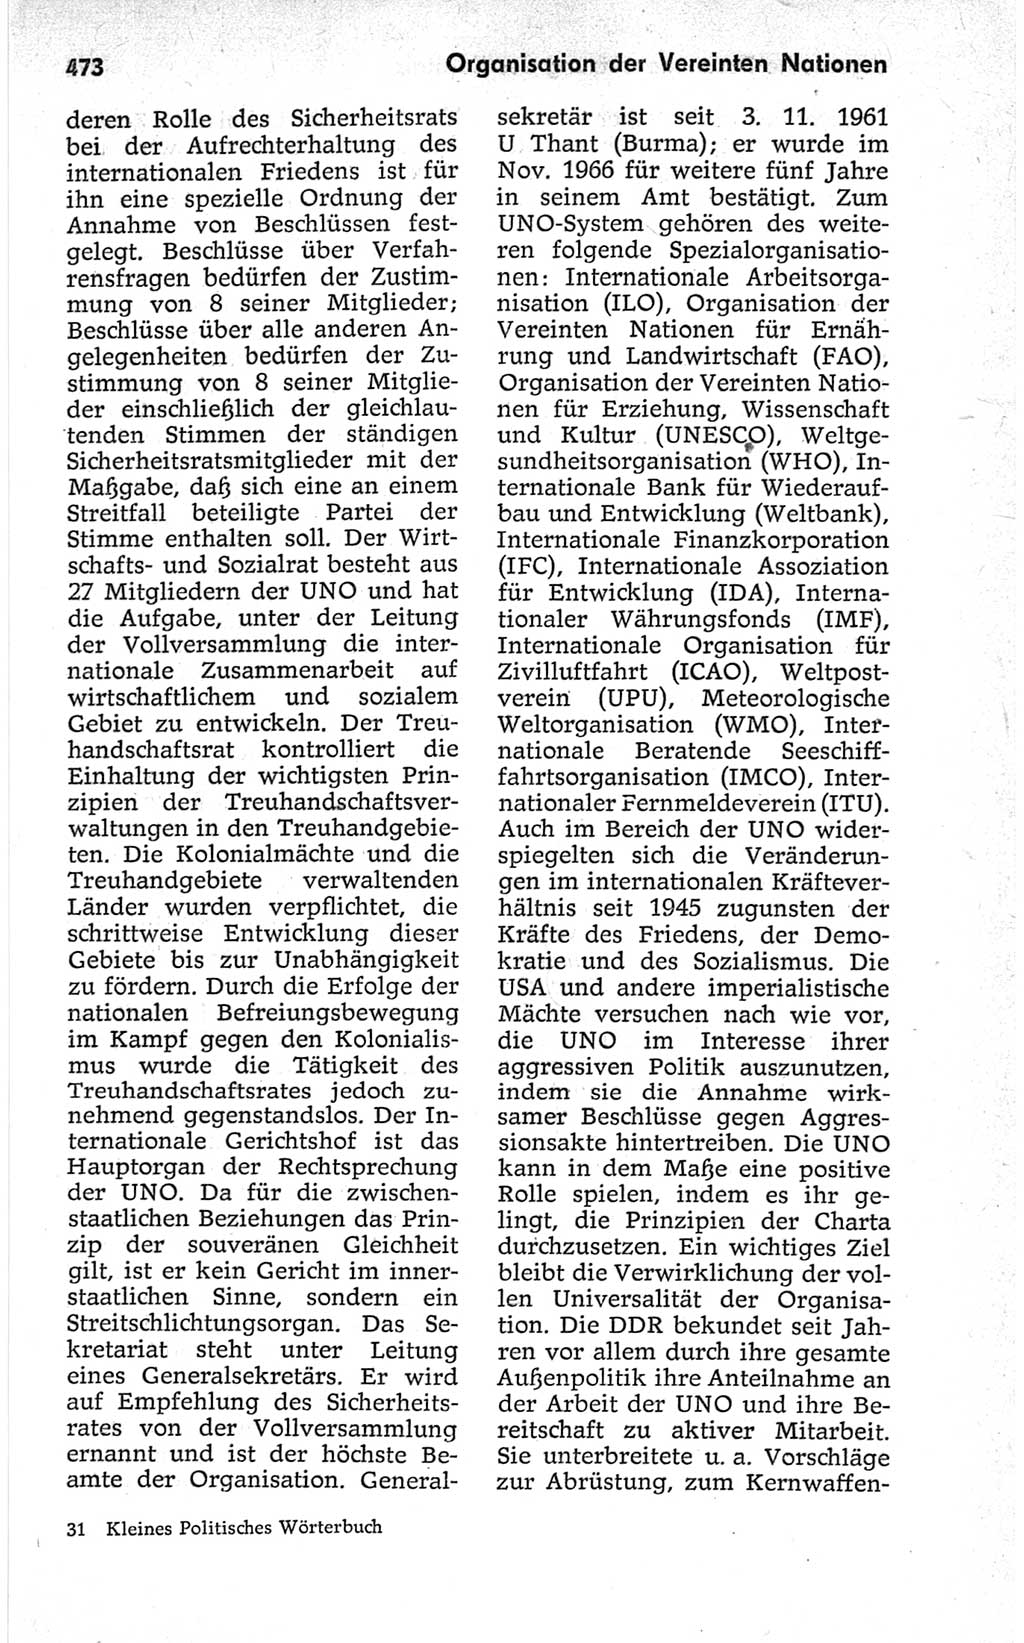 Kleines politisches Wörterbuch [Deutsche Demokratische Republik (DDR)] 1967, Seite 473 (Kl. pol. Wb. DDR 1967, S. 473)